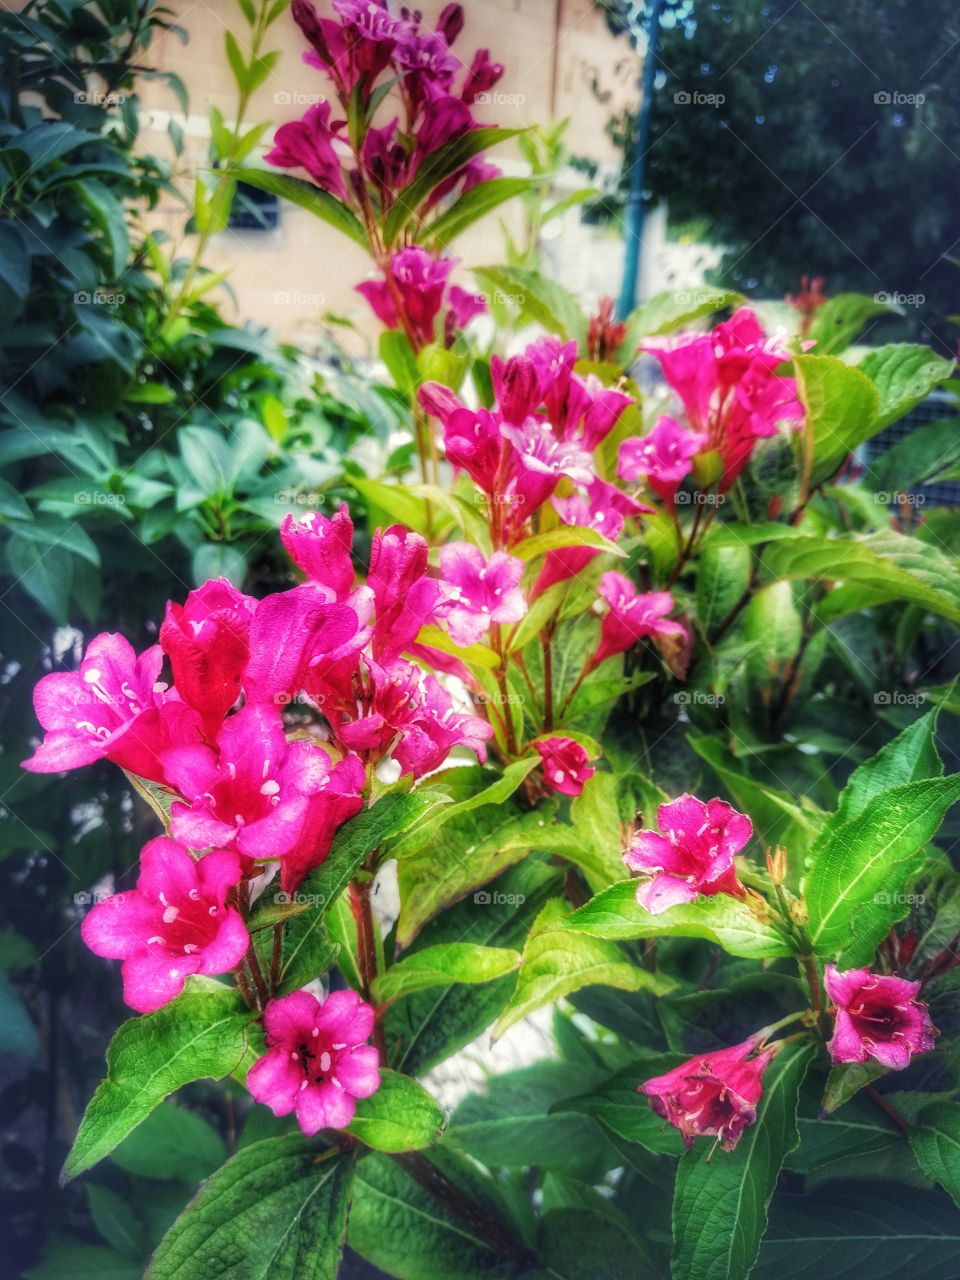 Garden treasures 🌺 - rose weigela - with filter